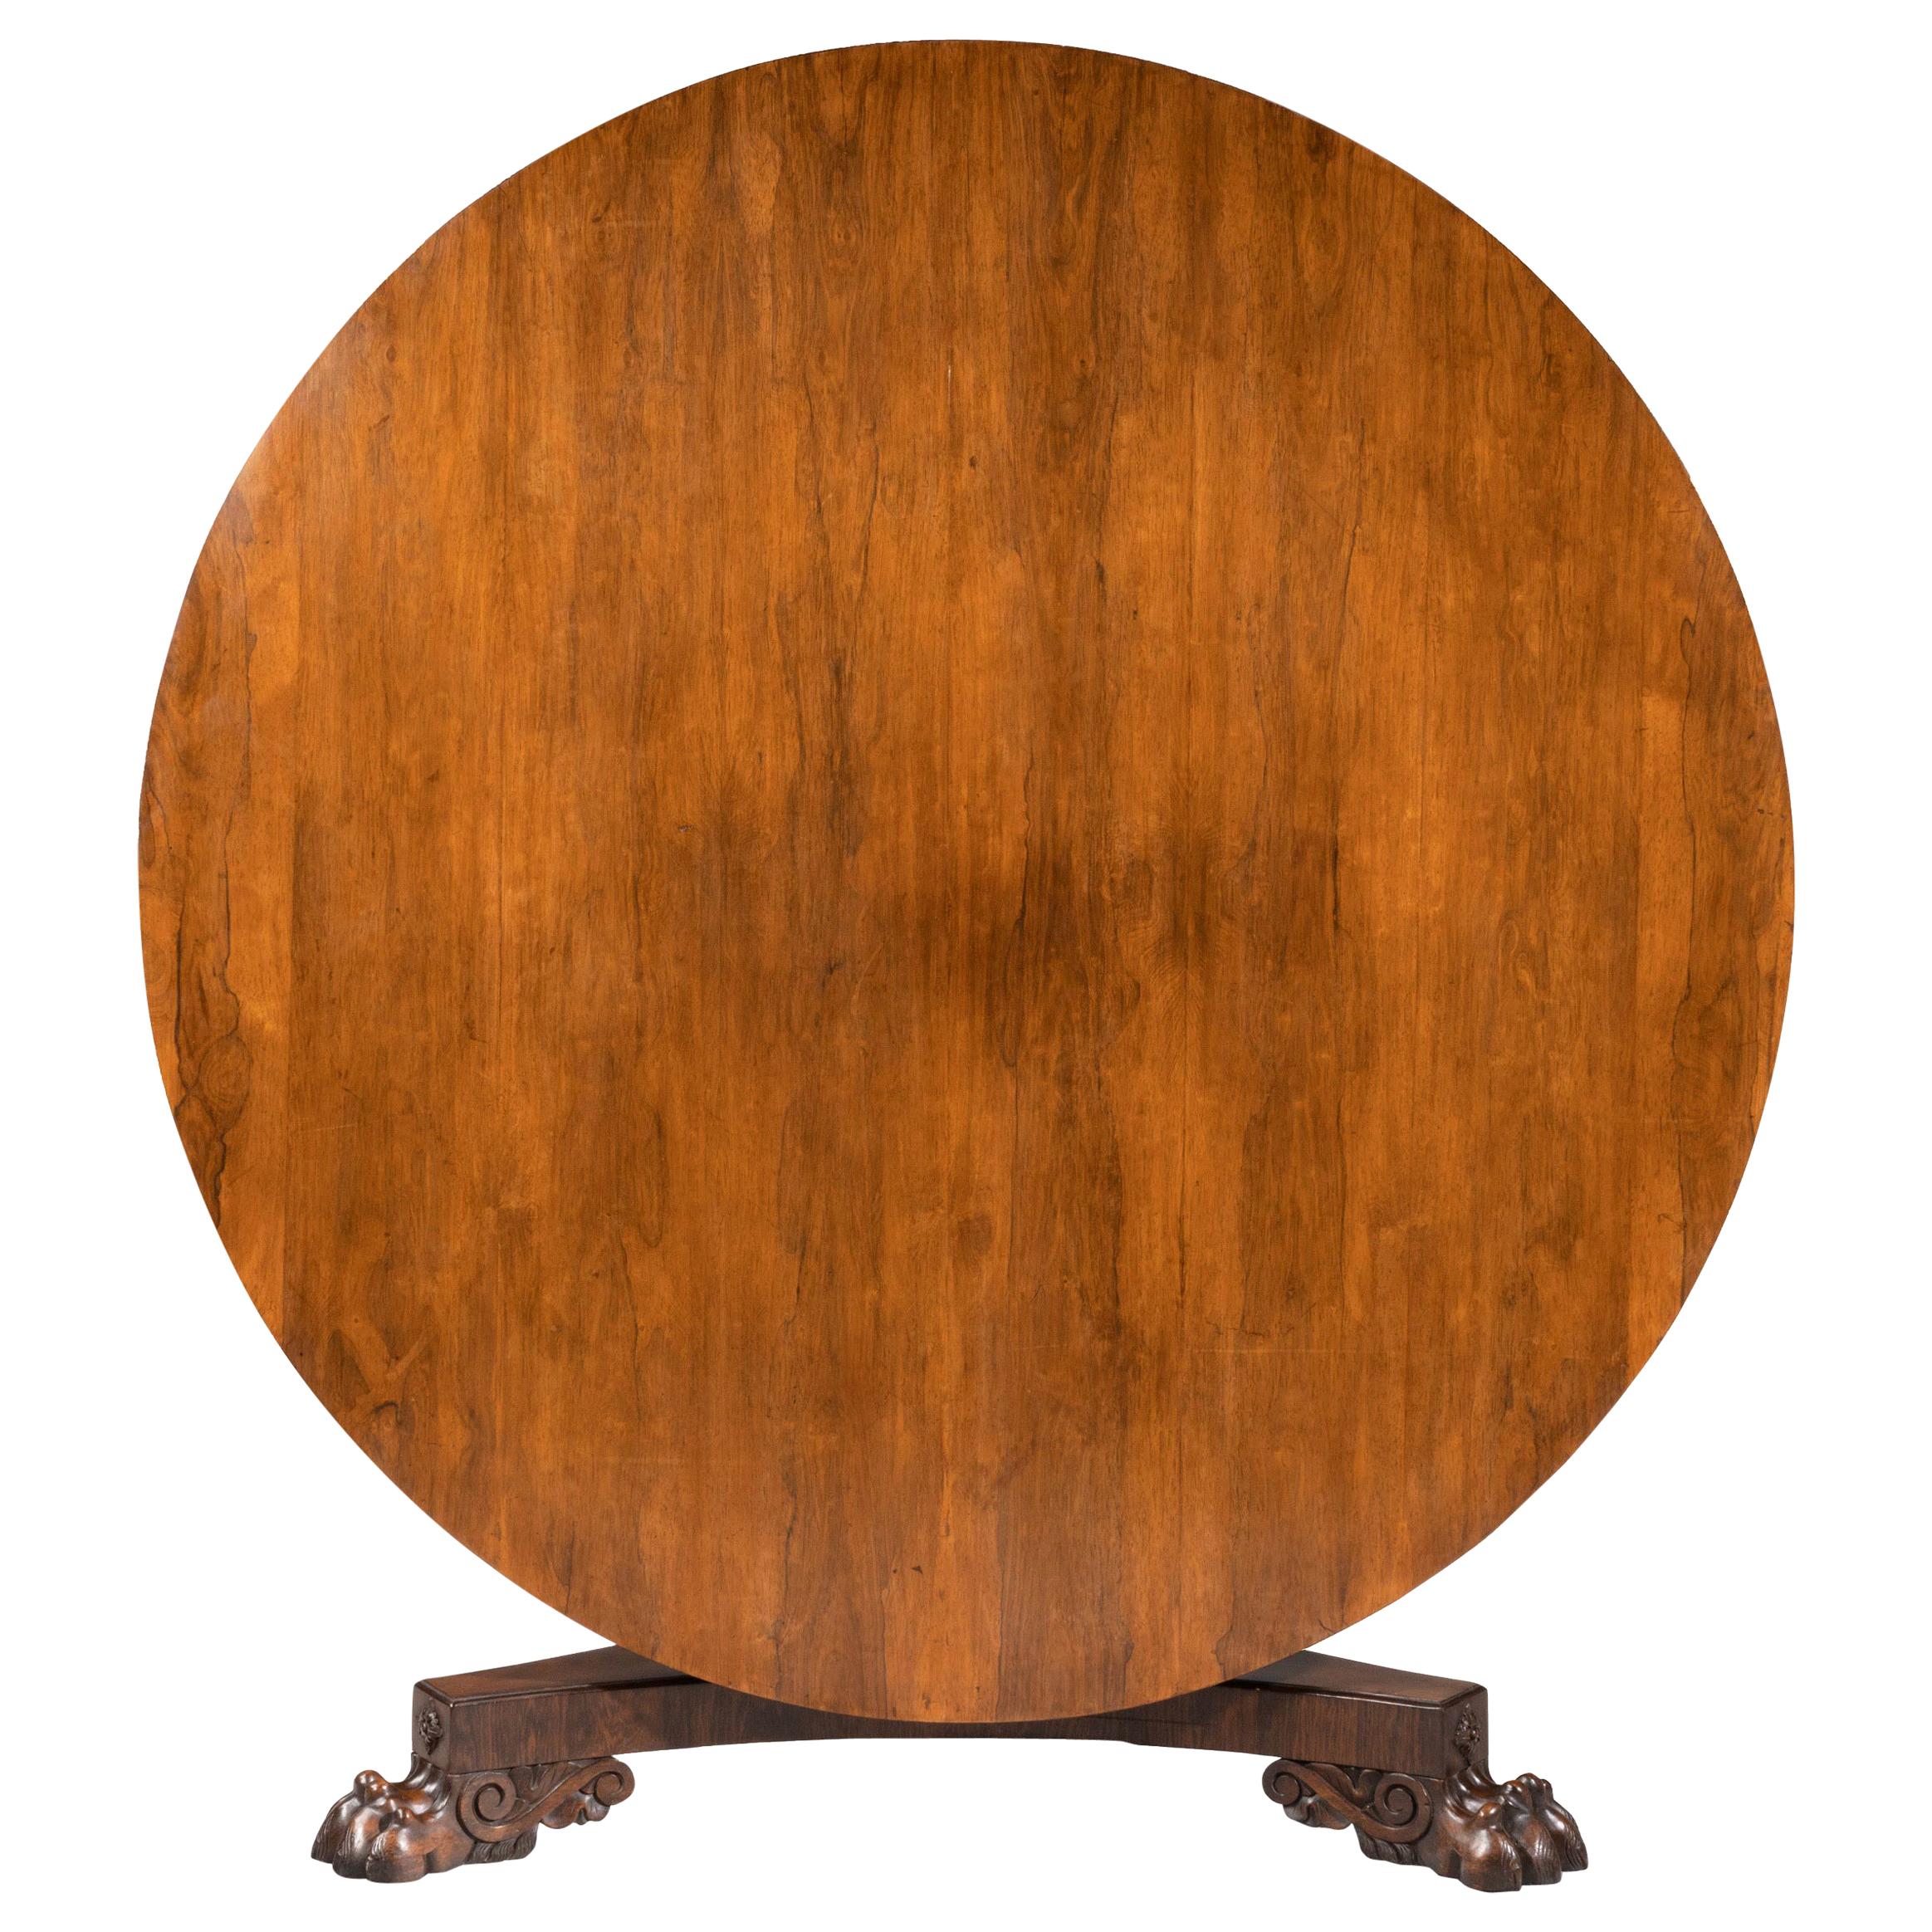 Regency Period Rosewood Circular Table